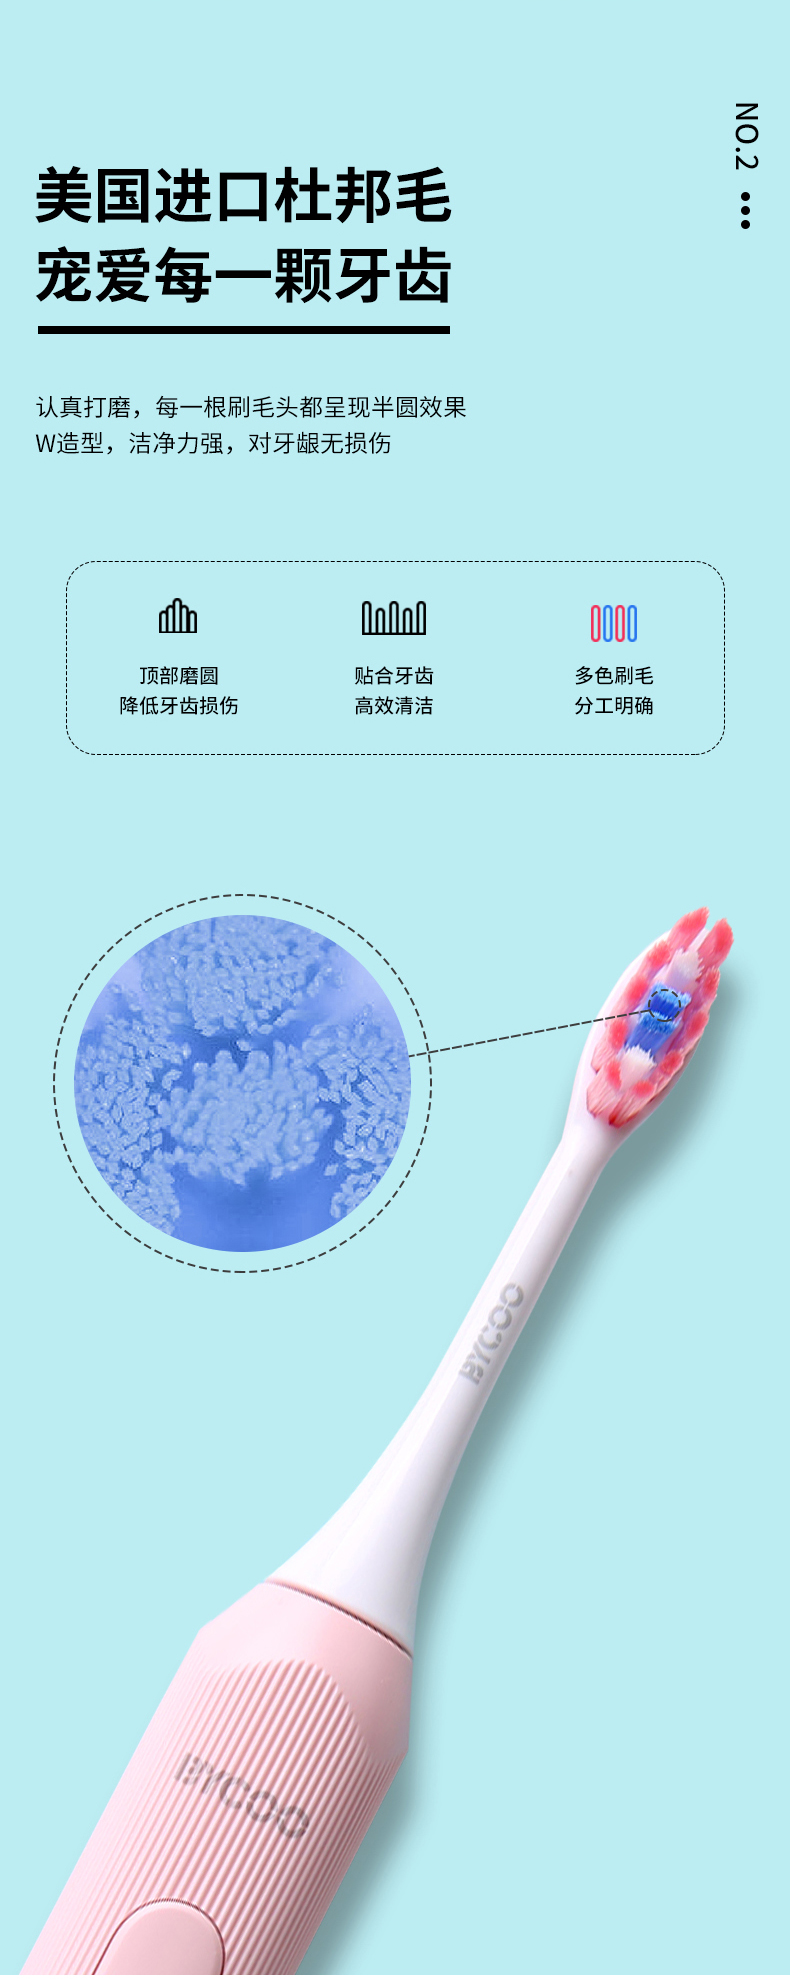 【轻众测】BYCOO电动牙刷免费试用,评测